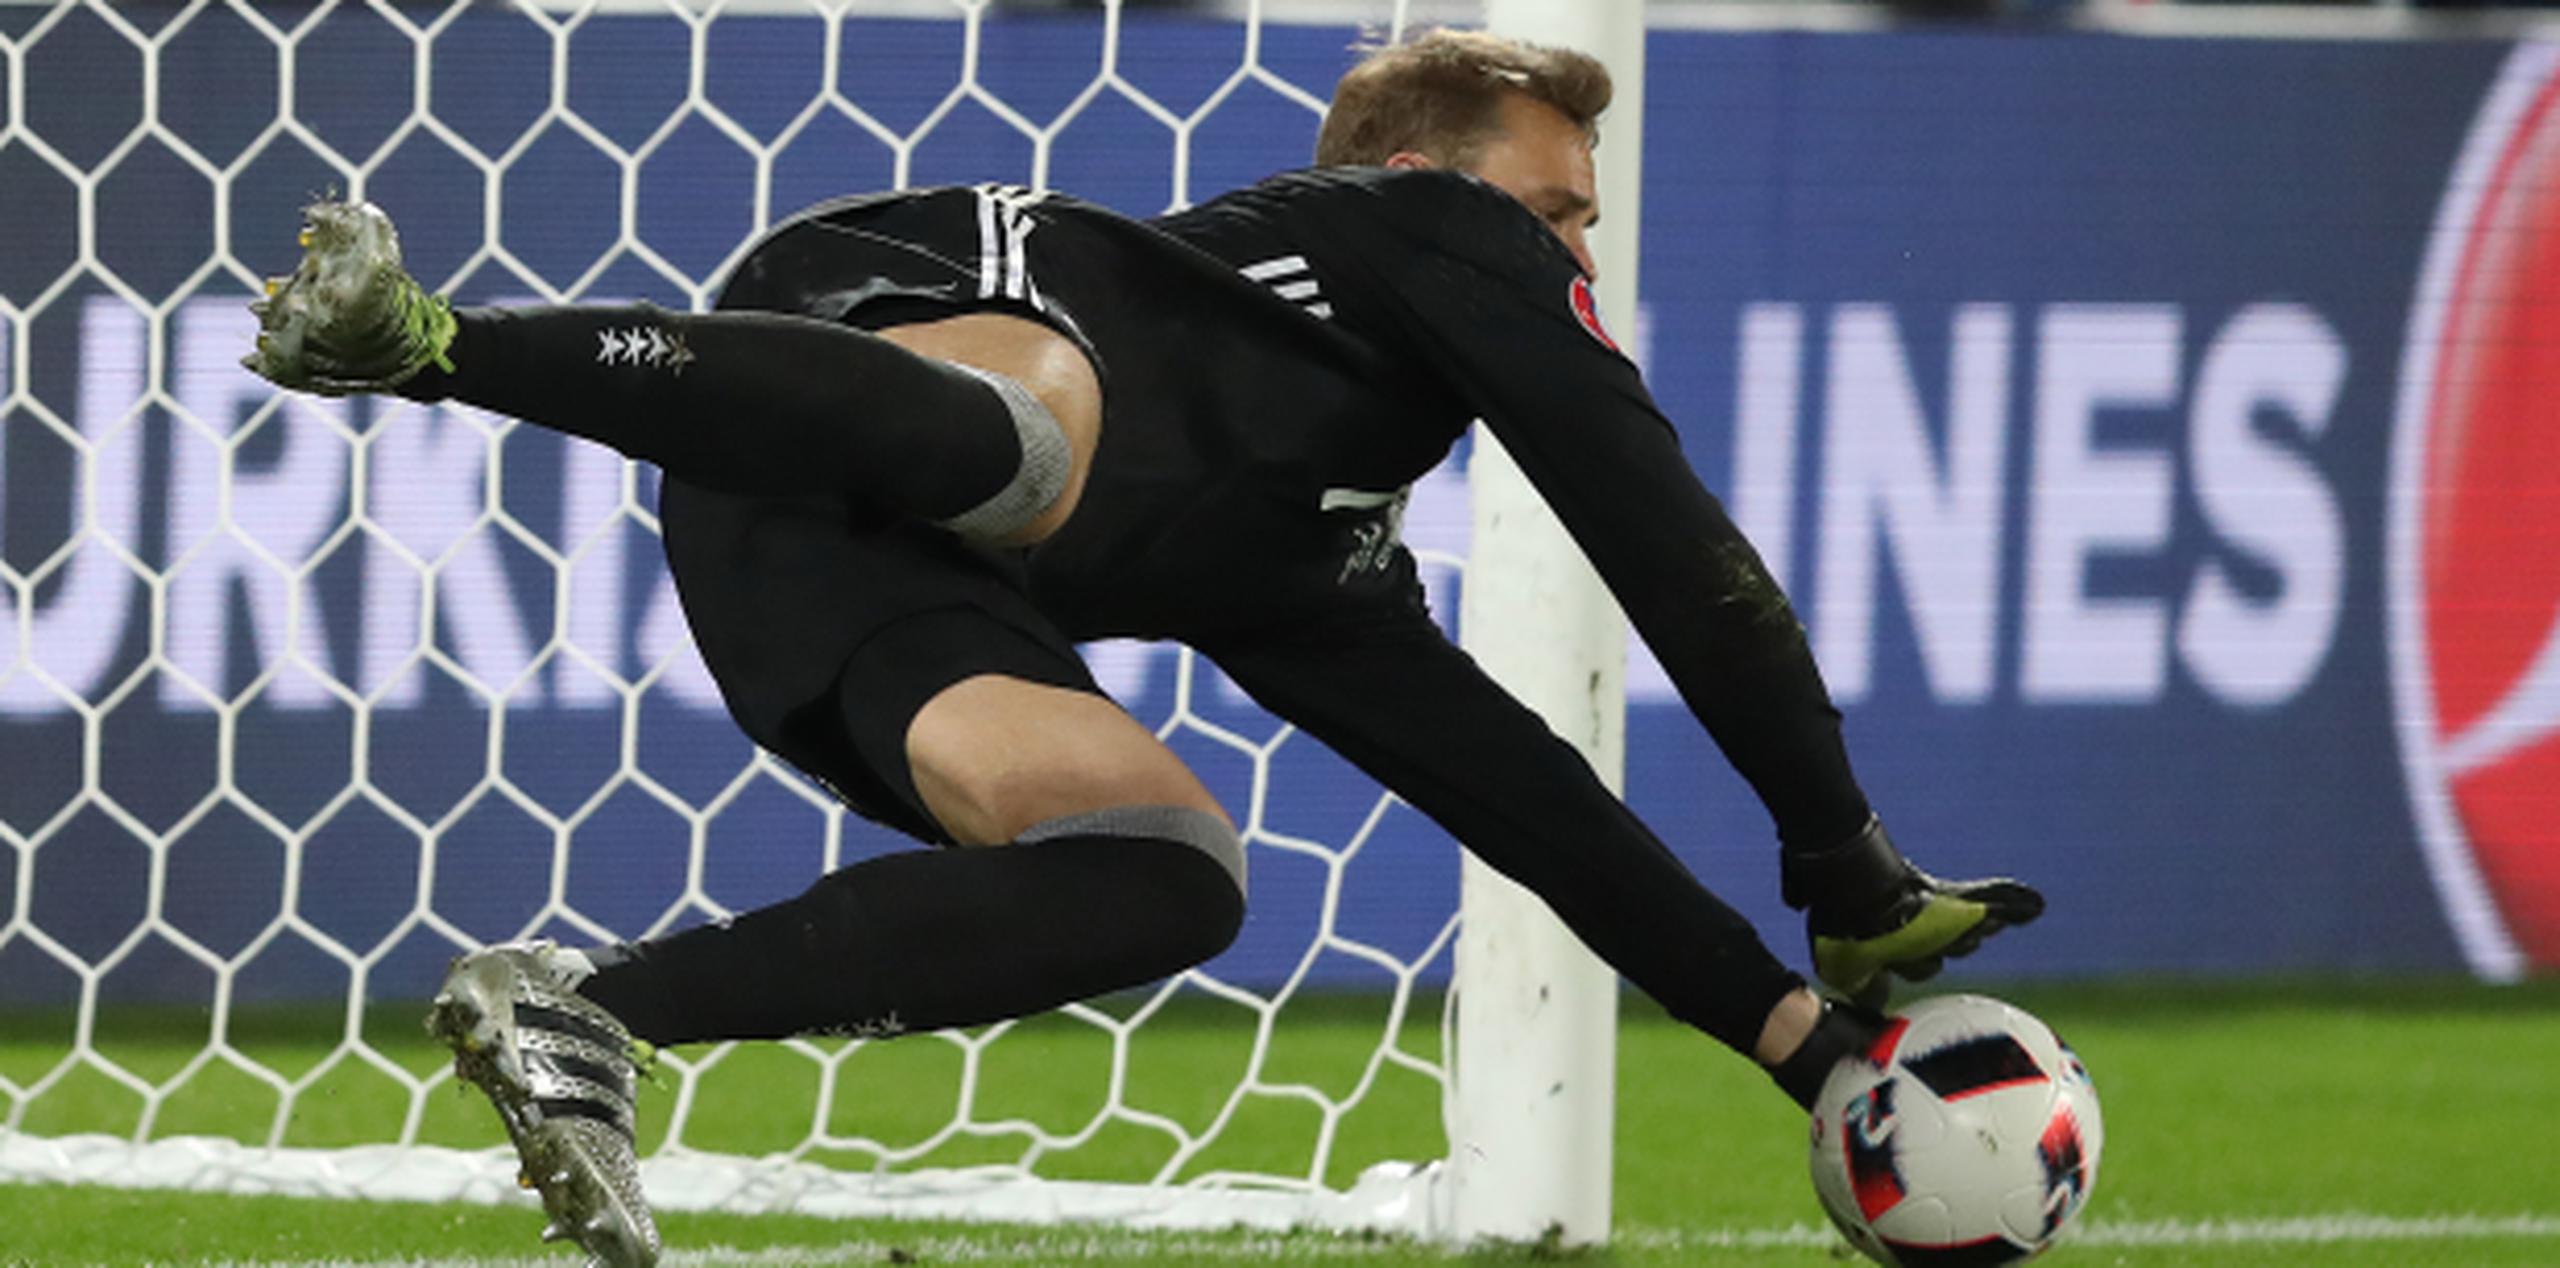 El portero alemán Manuel Neuer ataja el penal de Matteo Darmian para dar paso al disparo de su compañero de equipo Jonas Hector que terminó sellando el pase de Alemania a las semifinales de la Eurocopa.   (AP/Thanassis Stavrakis)
